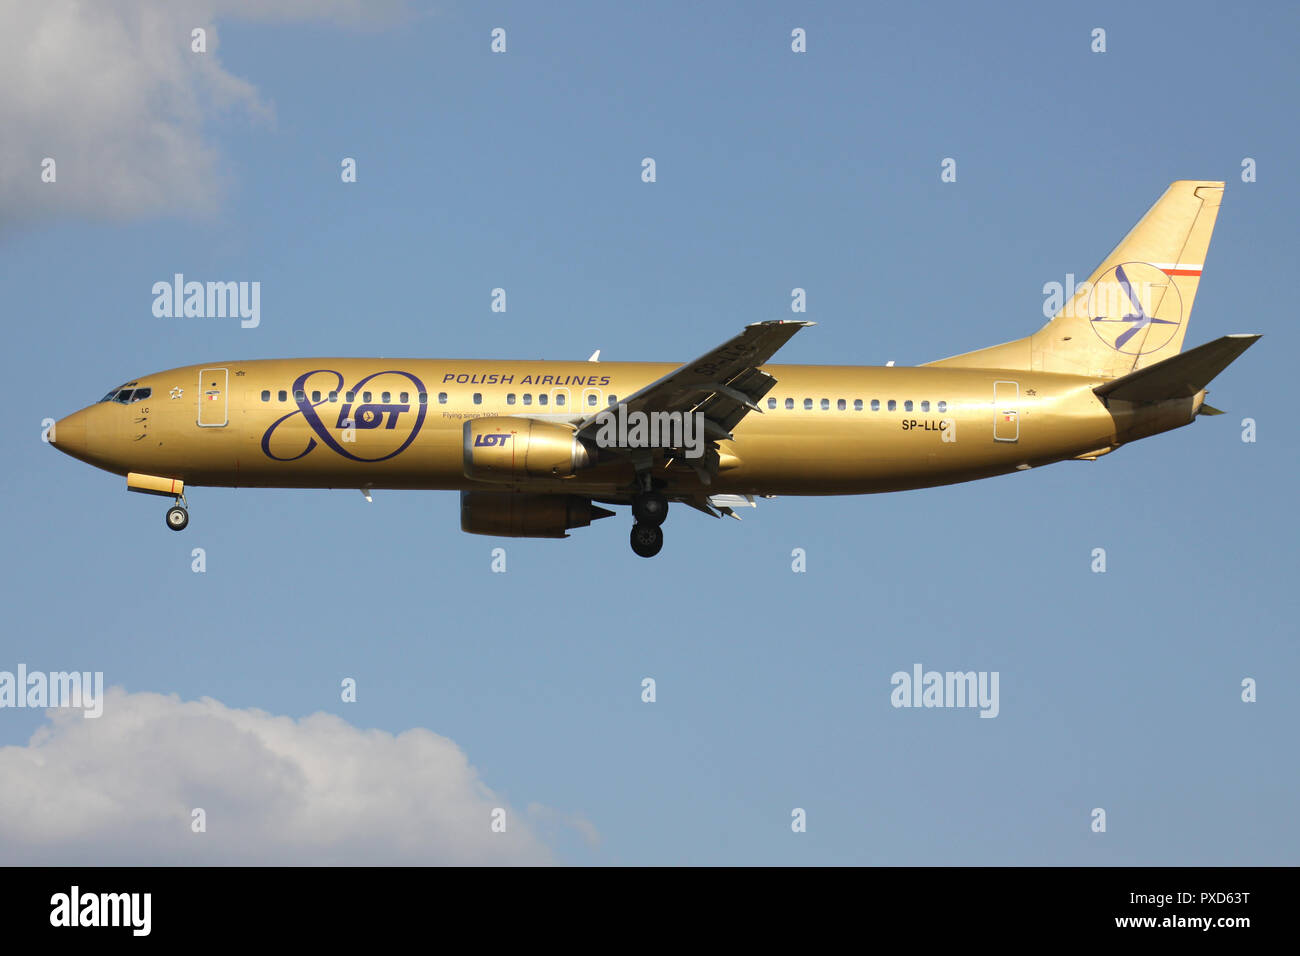 Boeing 737-400 LOT polonaise dans golden 80 ans avec couleurs d'enregistrement SP-LLC en courte finale pour la piste 01 de l'aéroport de Bruxelles. Banque D'Images